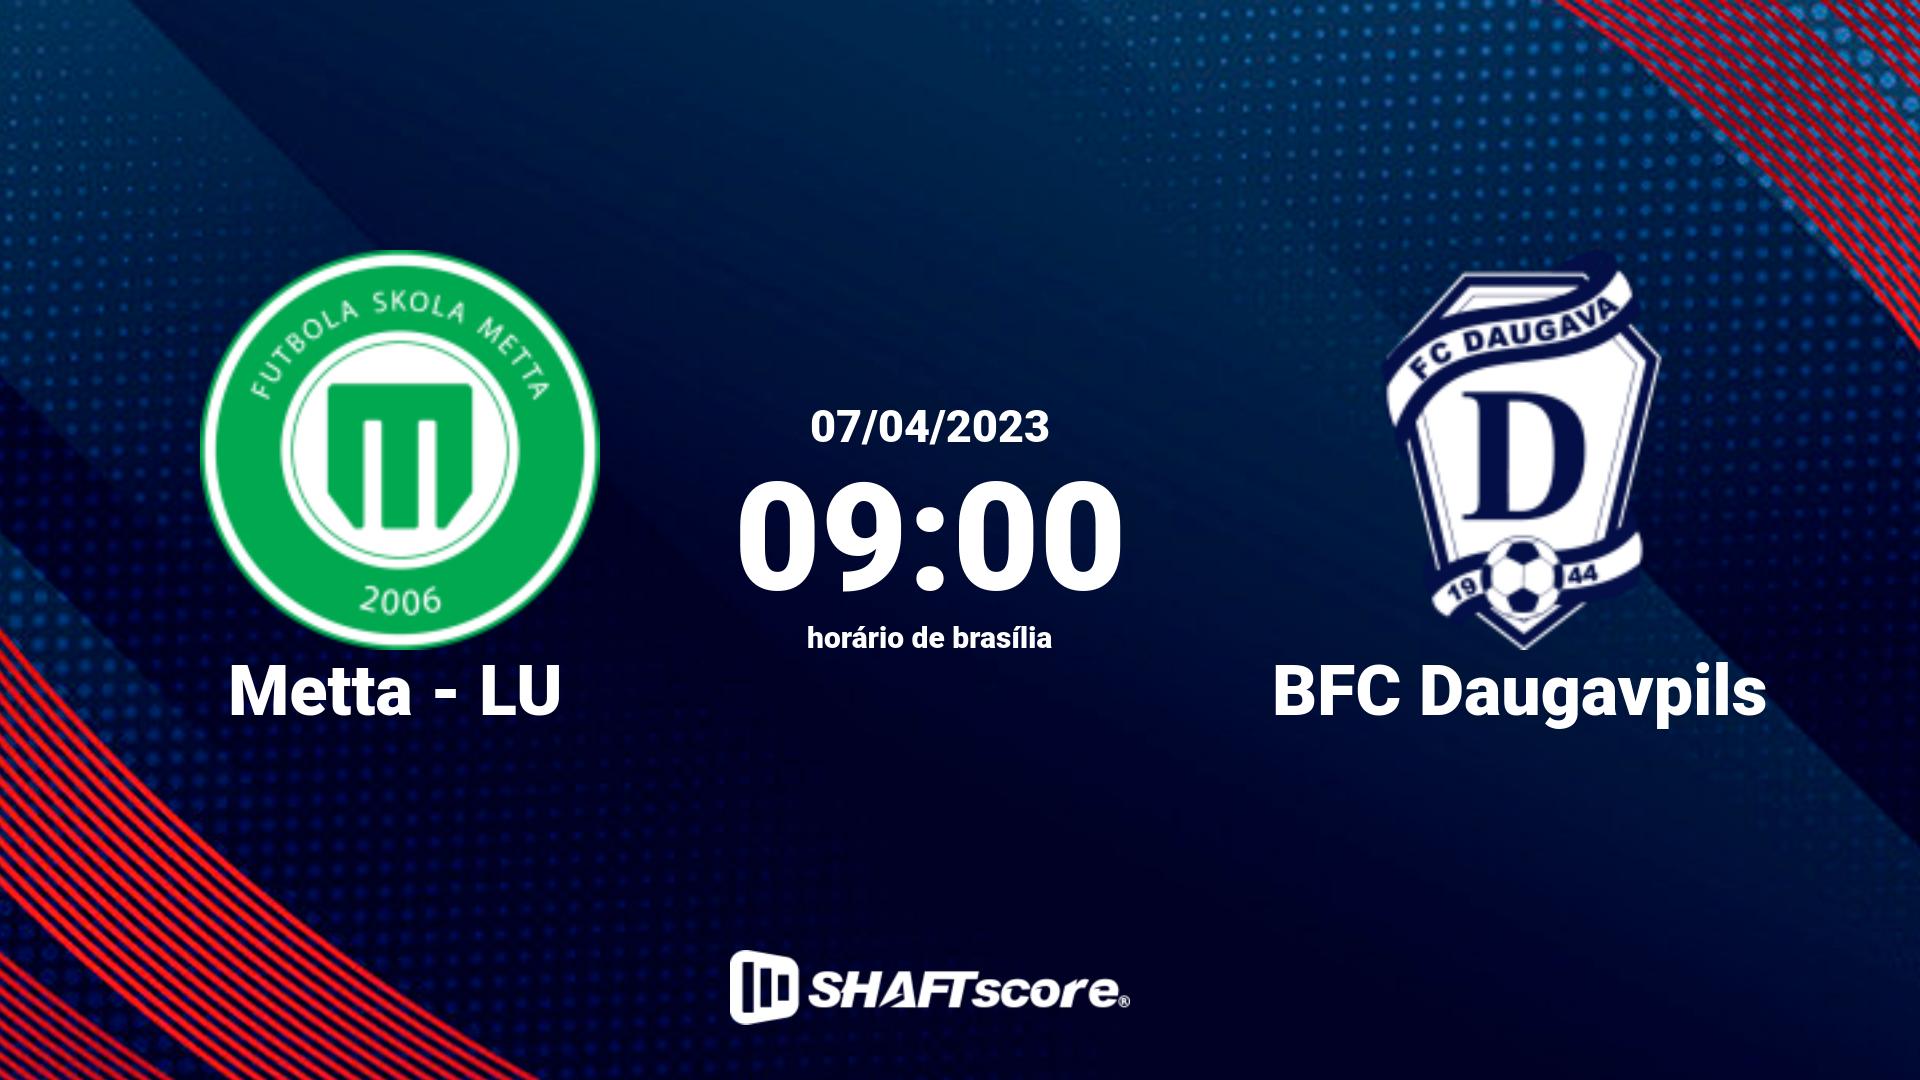 Estatísticas do jogo Metta - LU vs BFC Daugavpils 07.04 09:00